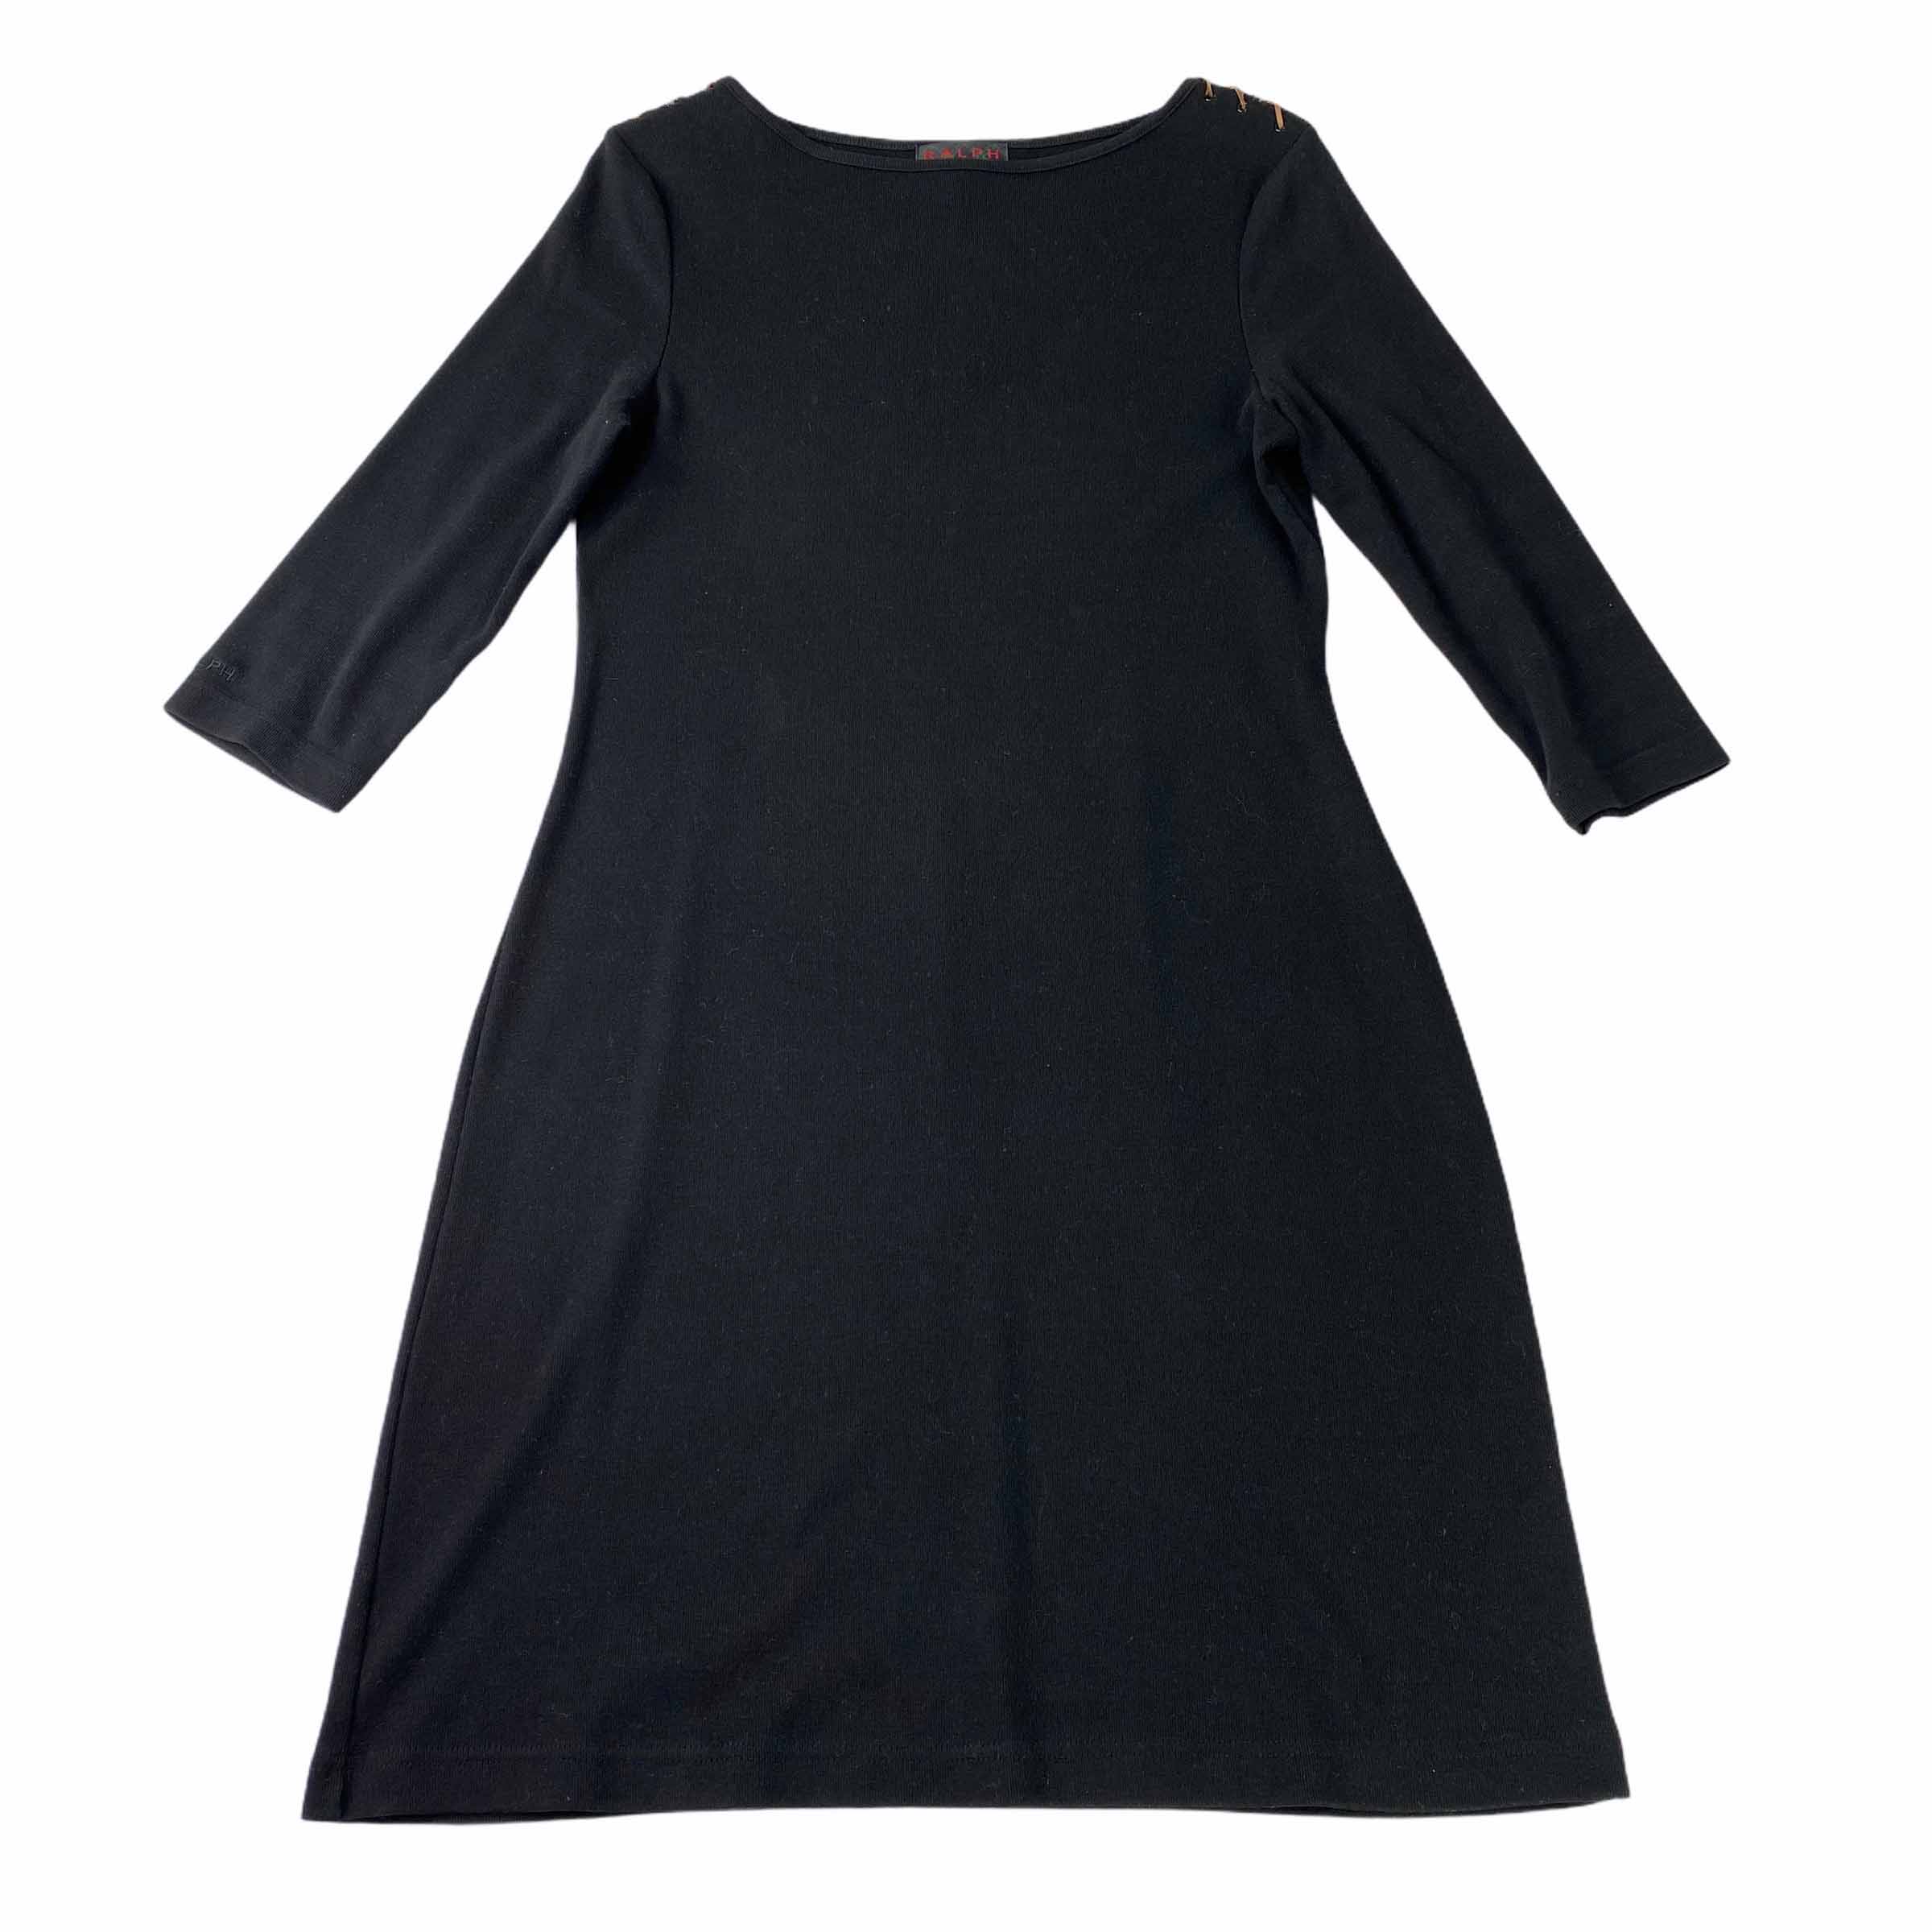 [Ralph Lauren] Black Cotton Dress - Size L